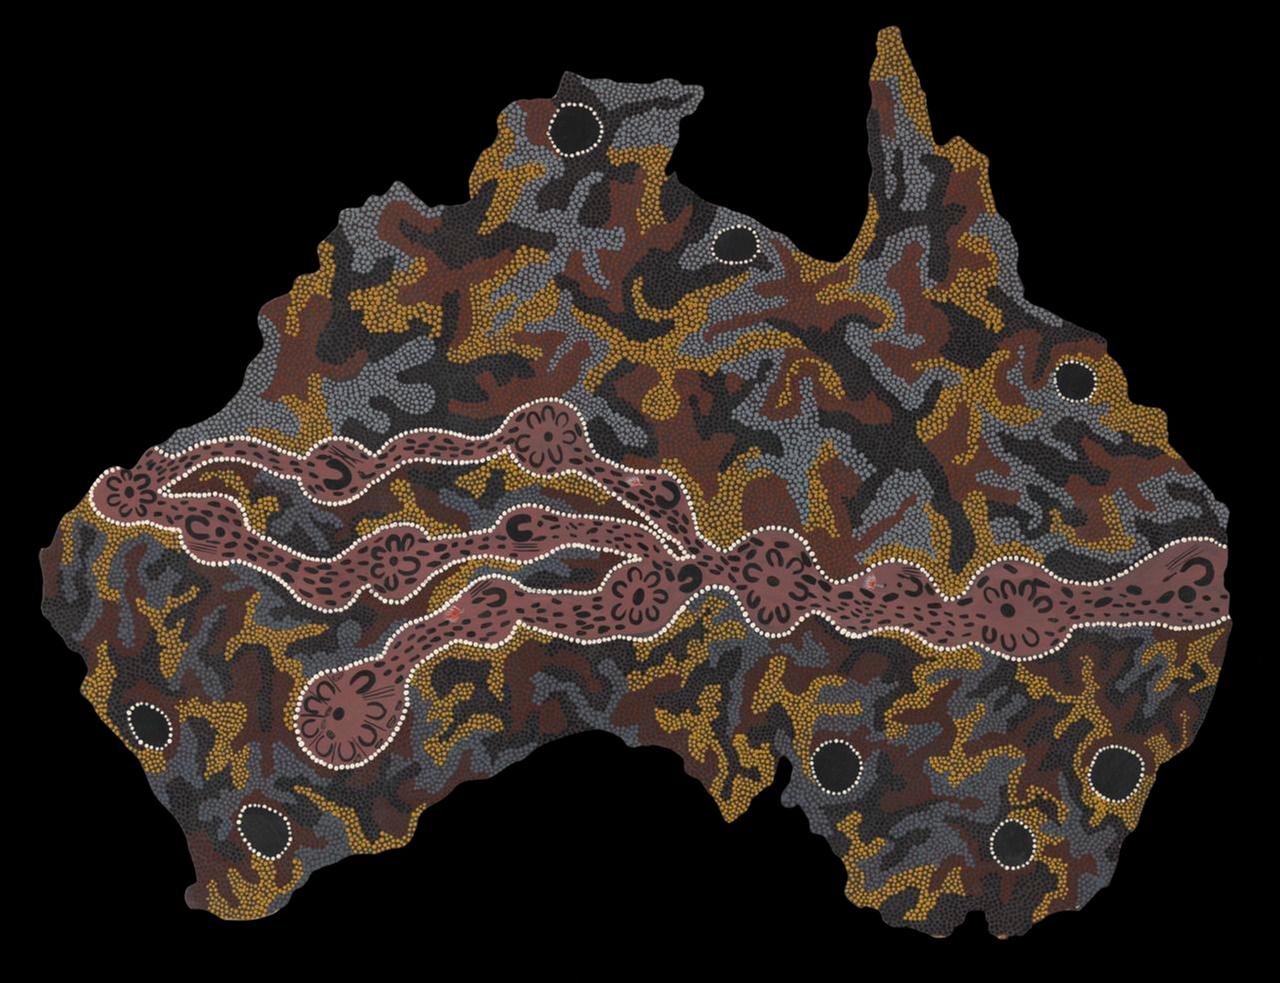 Das Gemälde von Josephine Mick zeigt eine abstrakte Landkarte Australiens.